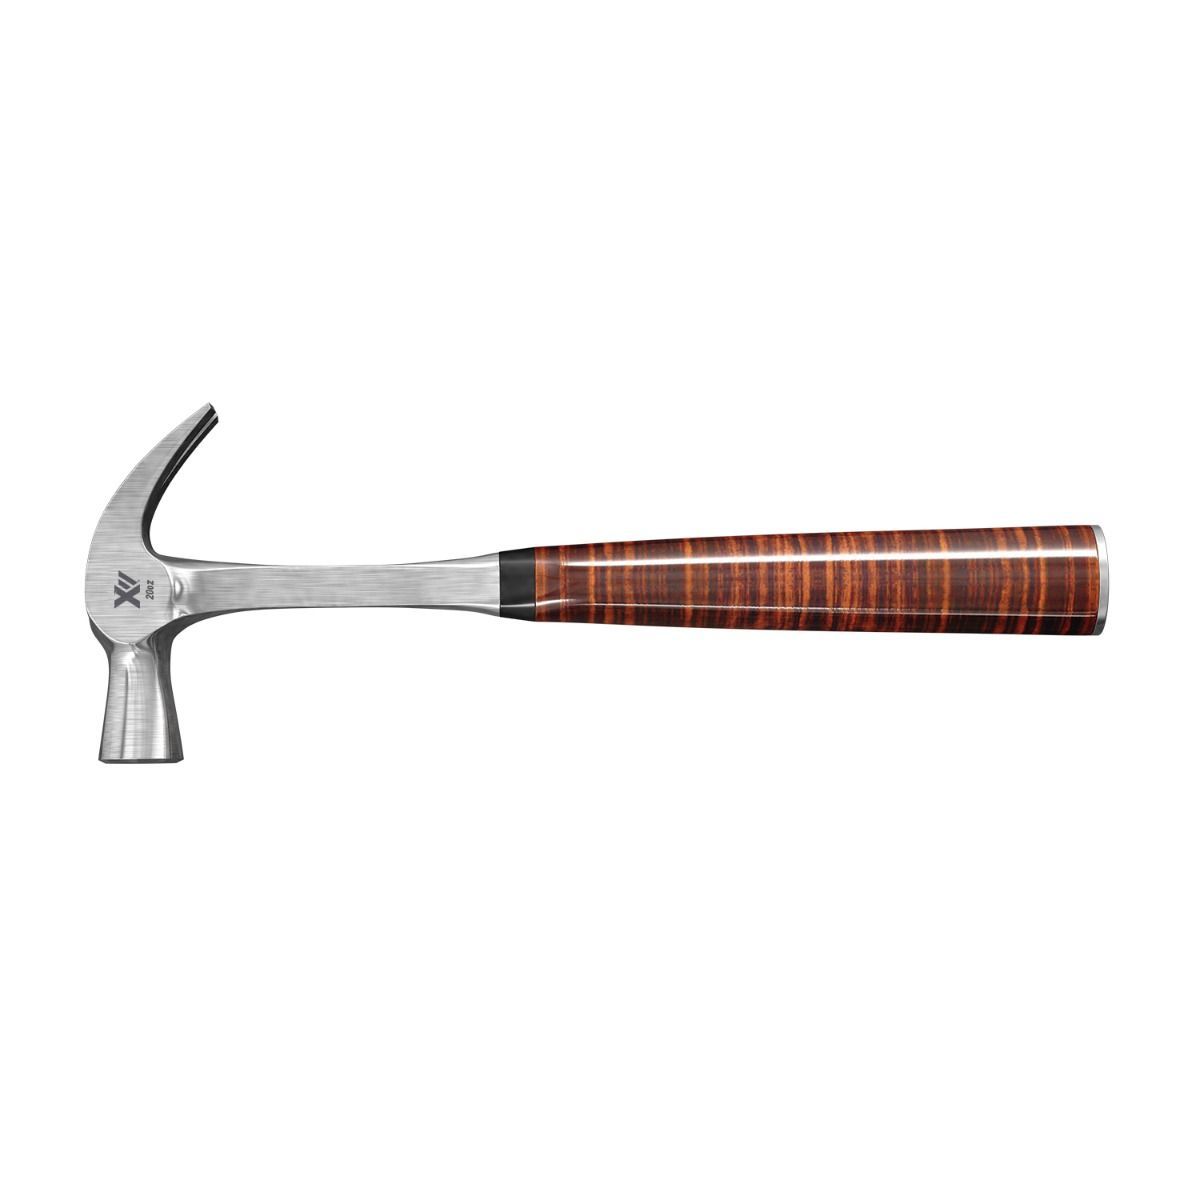 Claw Hammer - INTEX Leather Grip 20oz